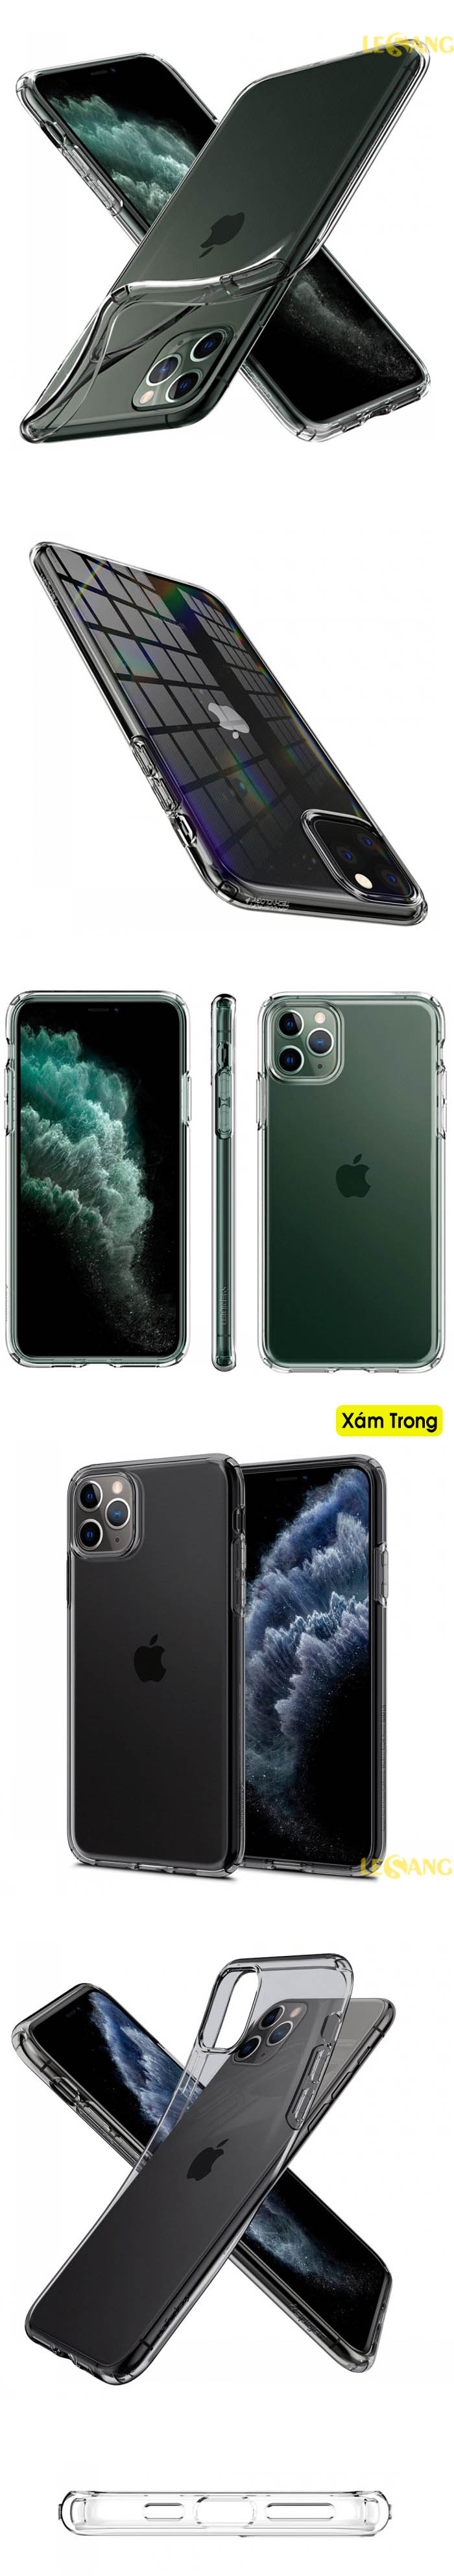 Ốp lưng iPhone 11 Pro Max Spigen Liquid Crystal 6